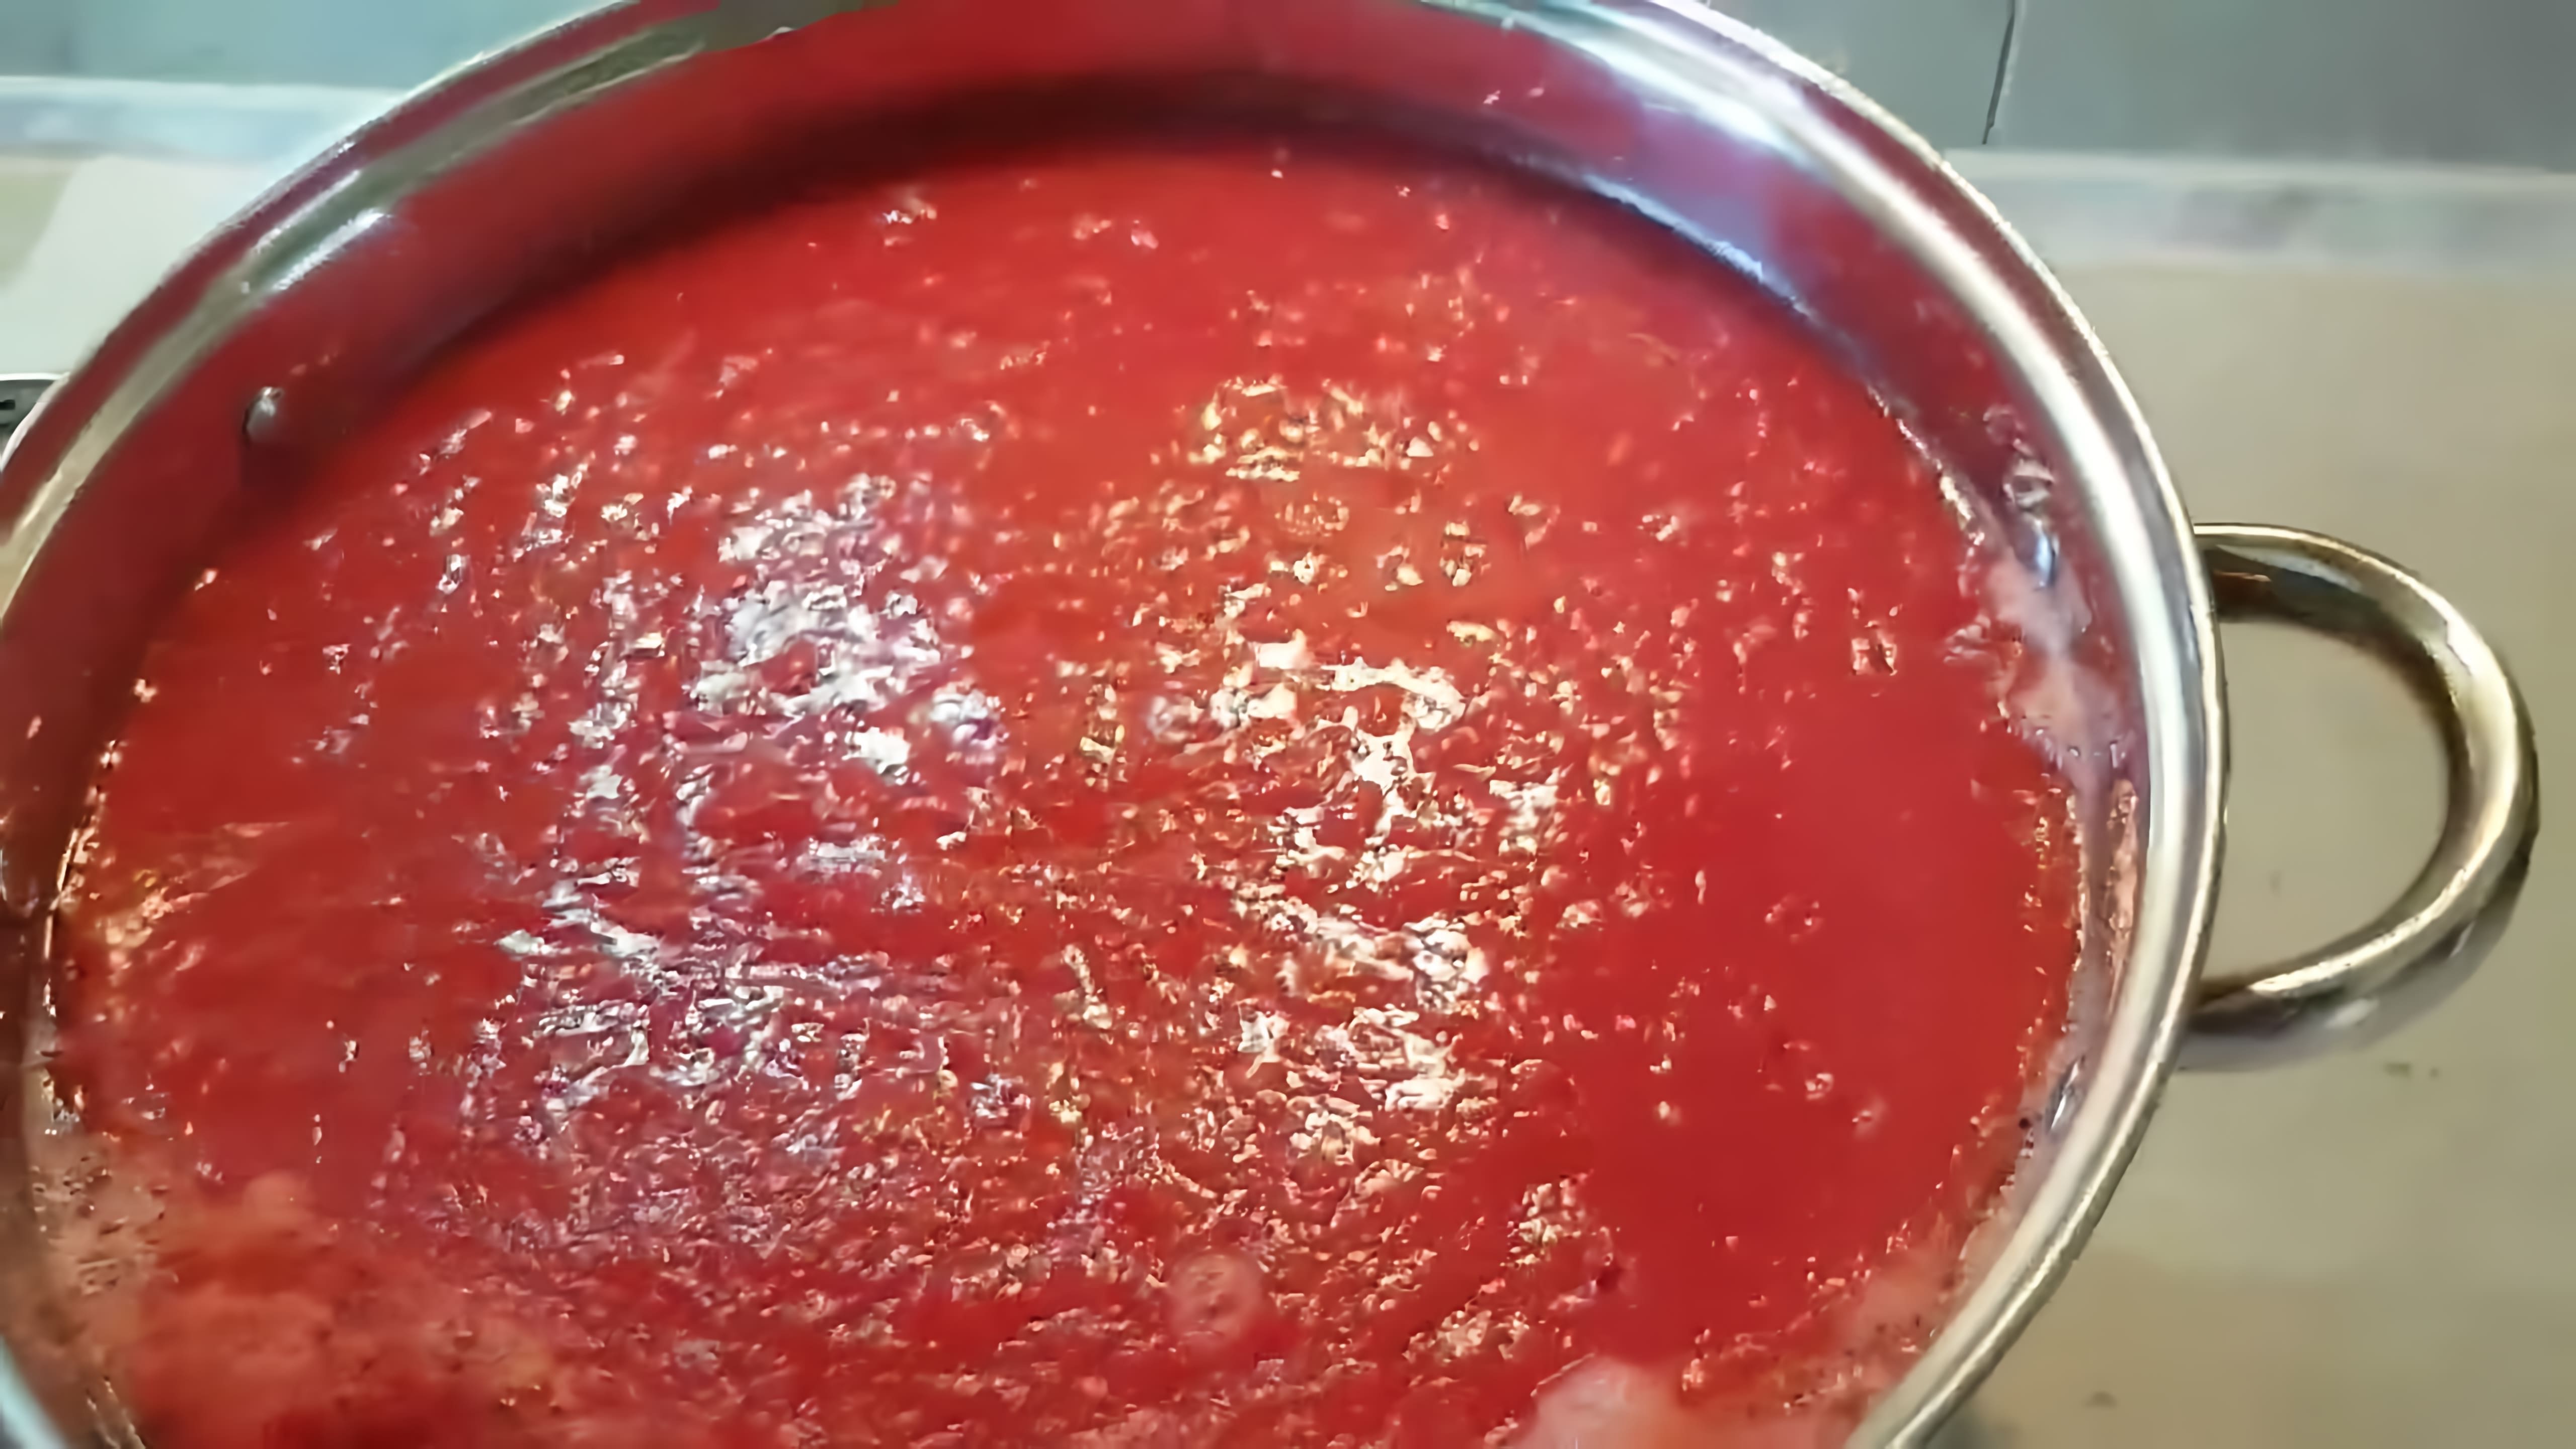 В данном видео демонстрируется процесс приготовления томатной пасты из помидоров